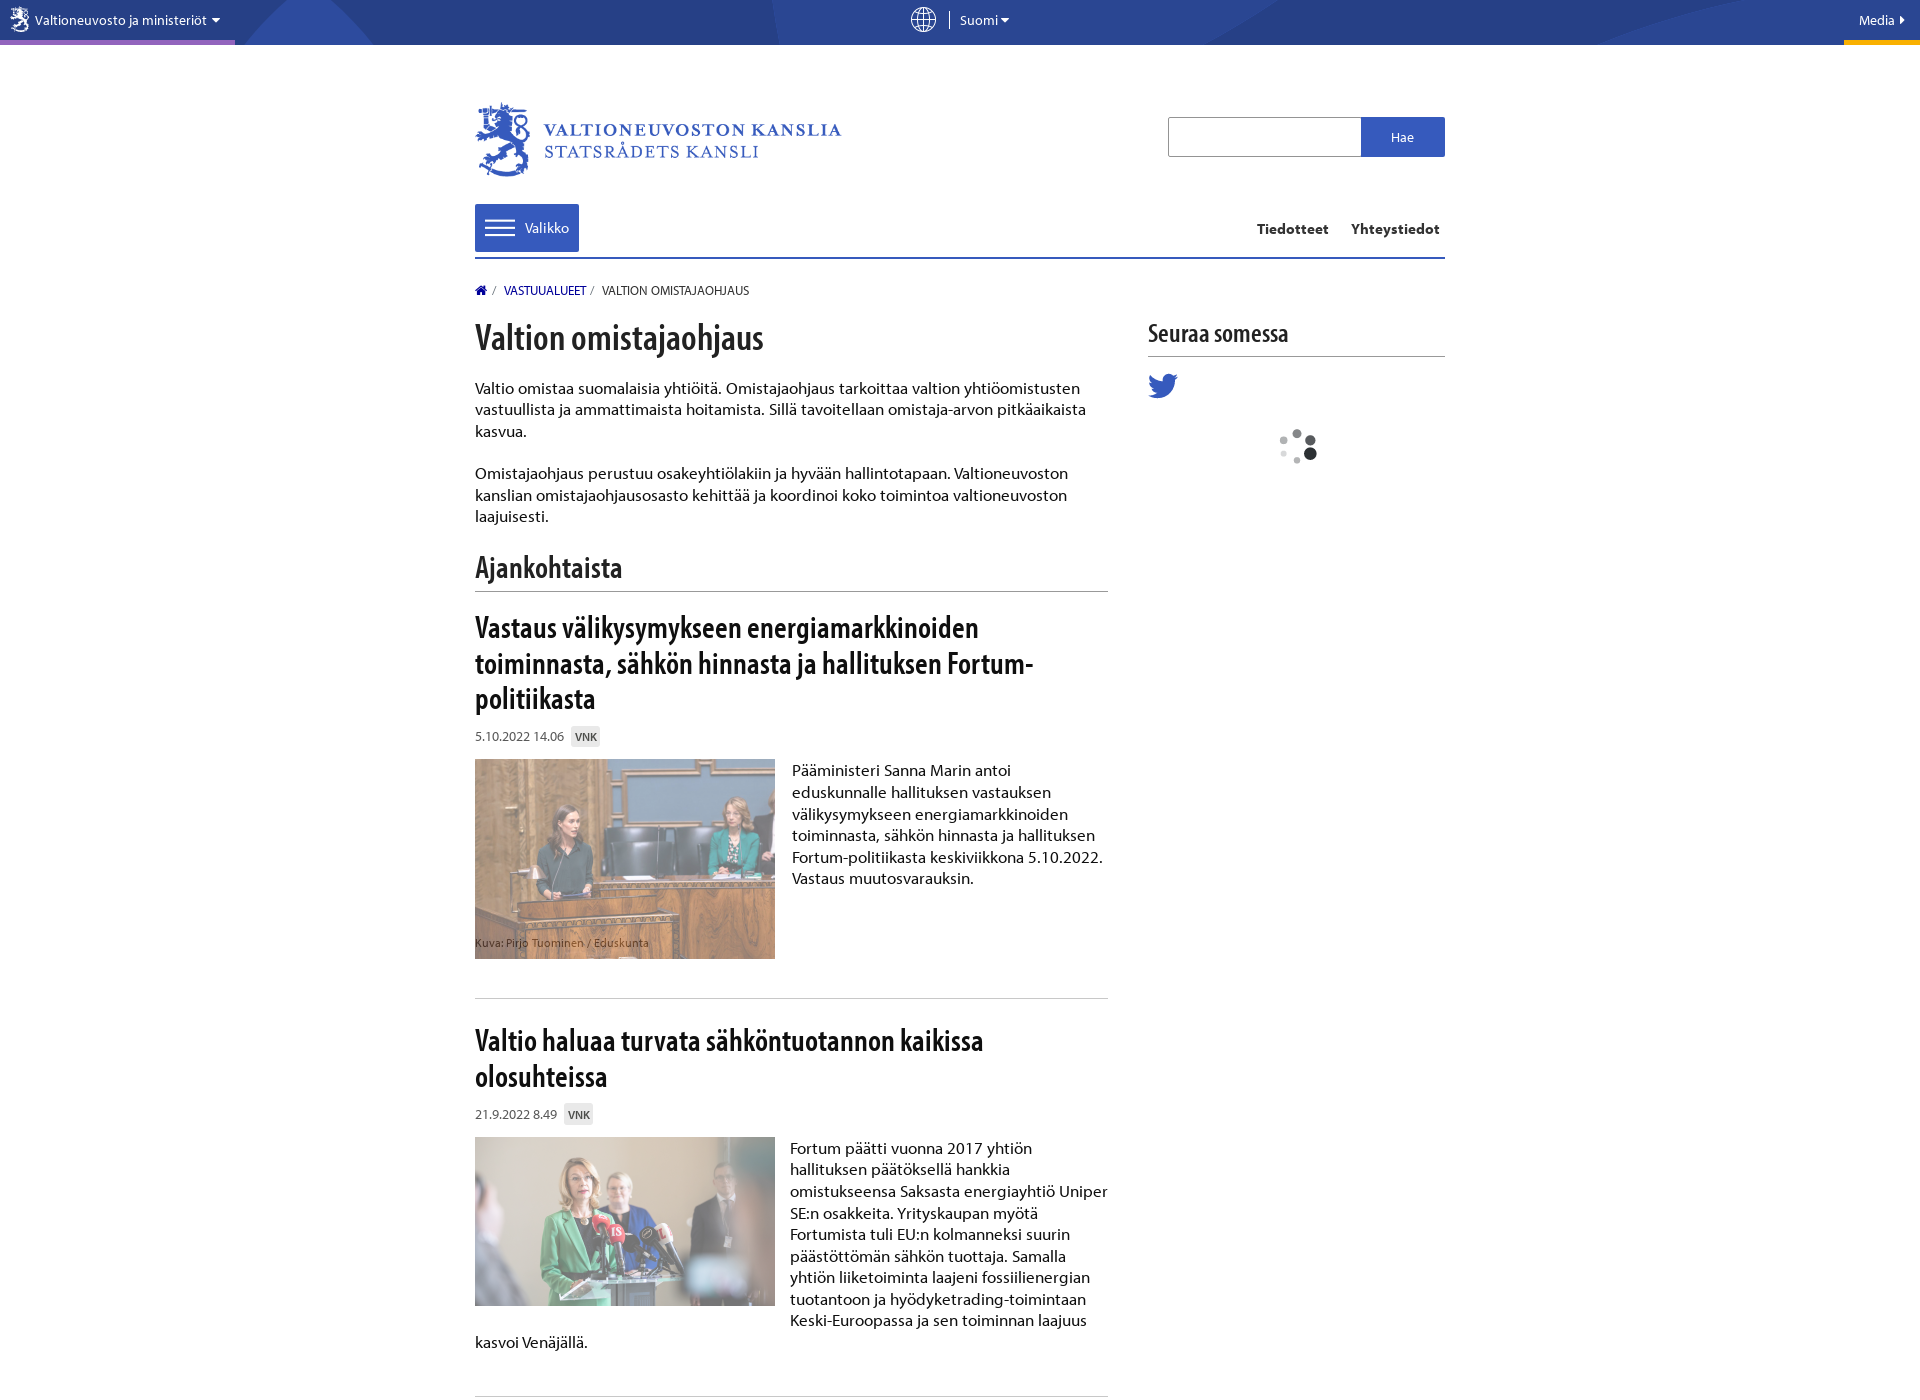 Screenshot for omistajaohjaus.fi